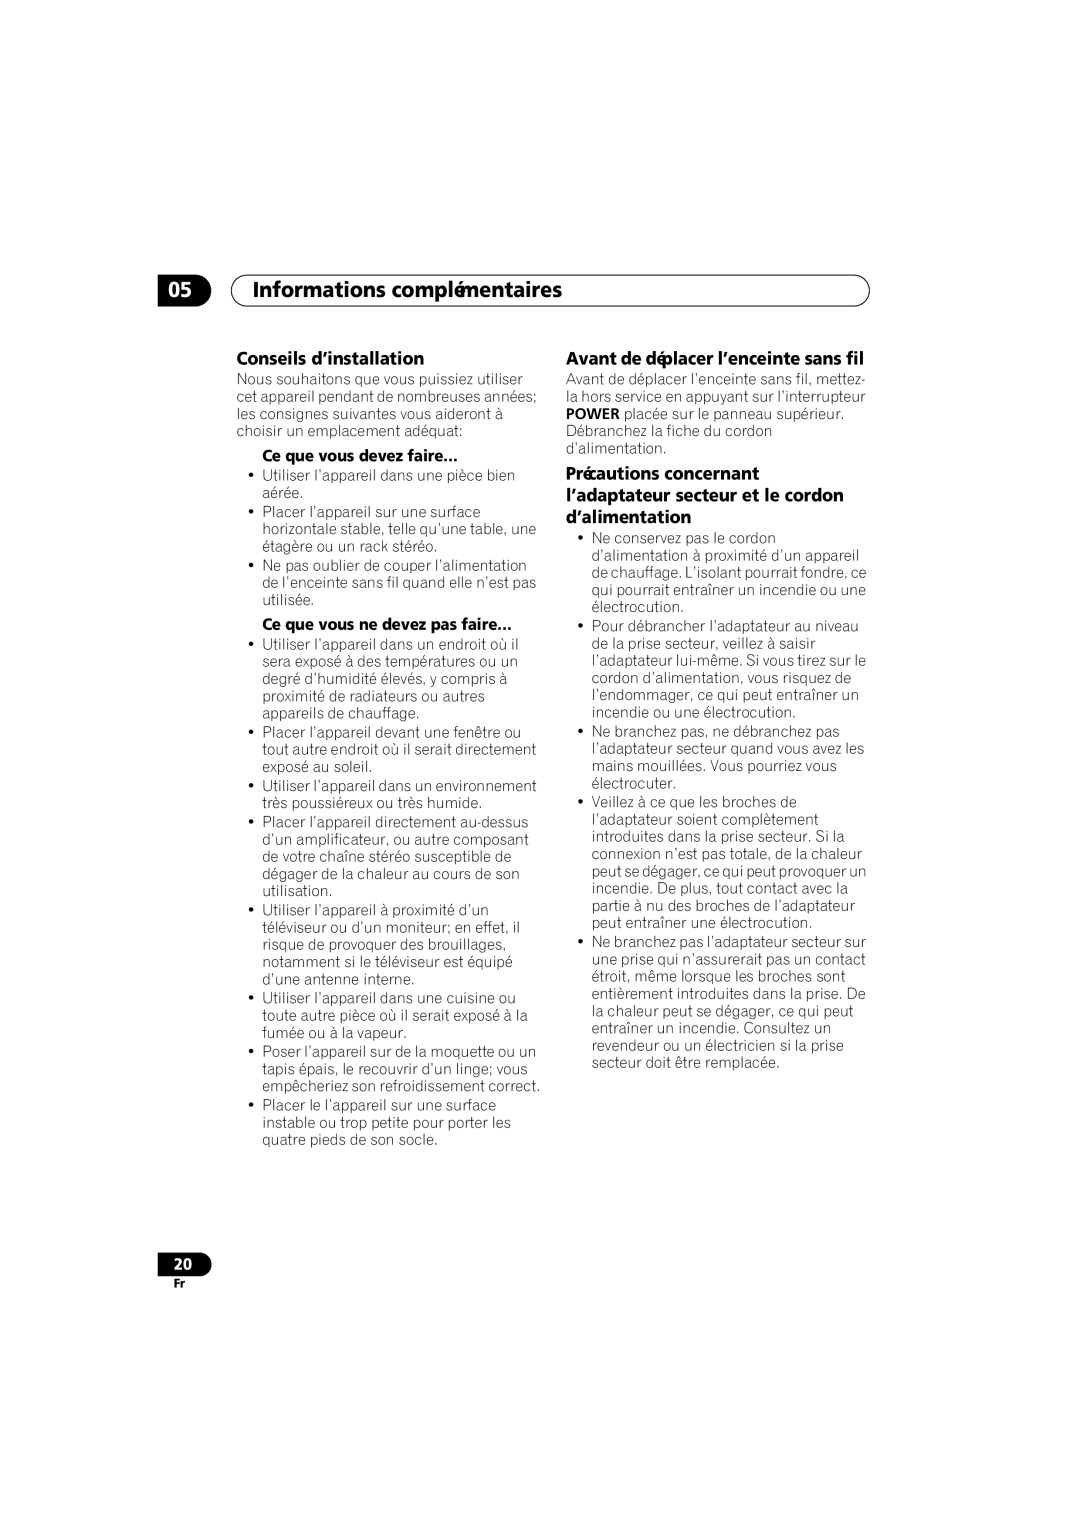 Pioneer XW-HT1 manual 05Informations complémentaires, Conseils d’installation, Avant de déplacer l’enceinte sans fil 